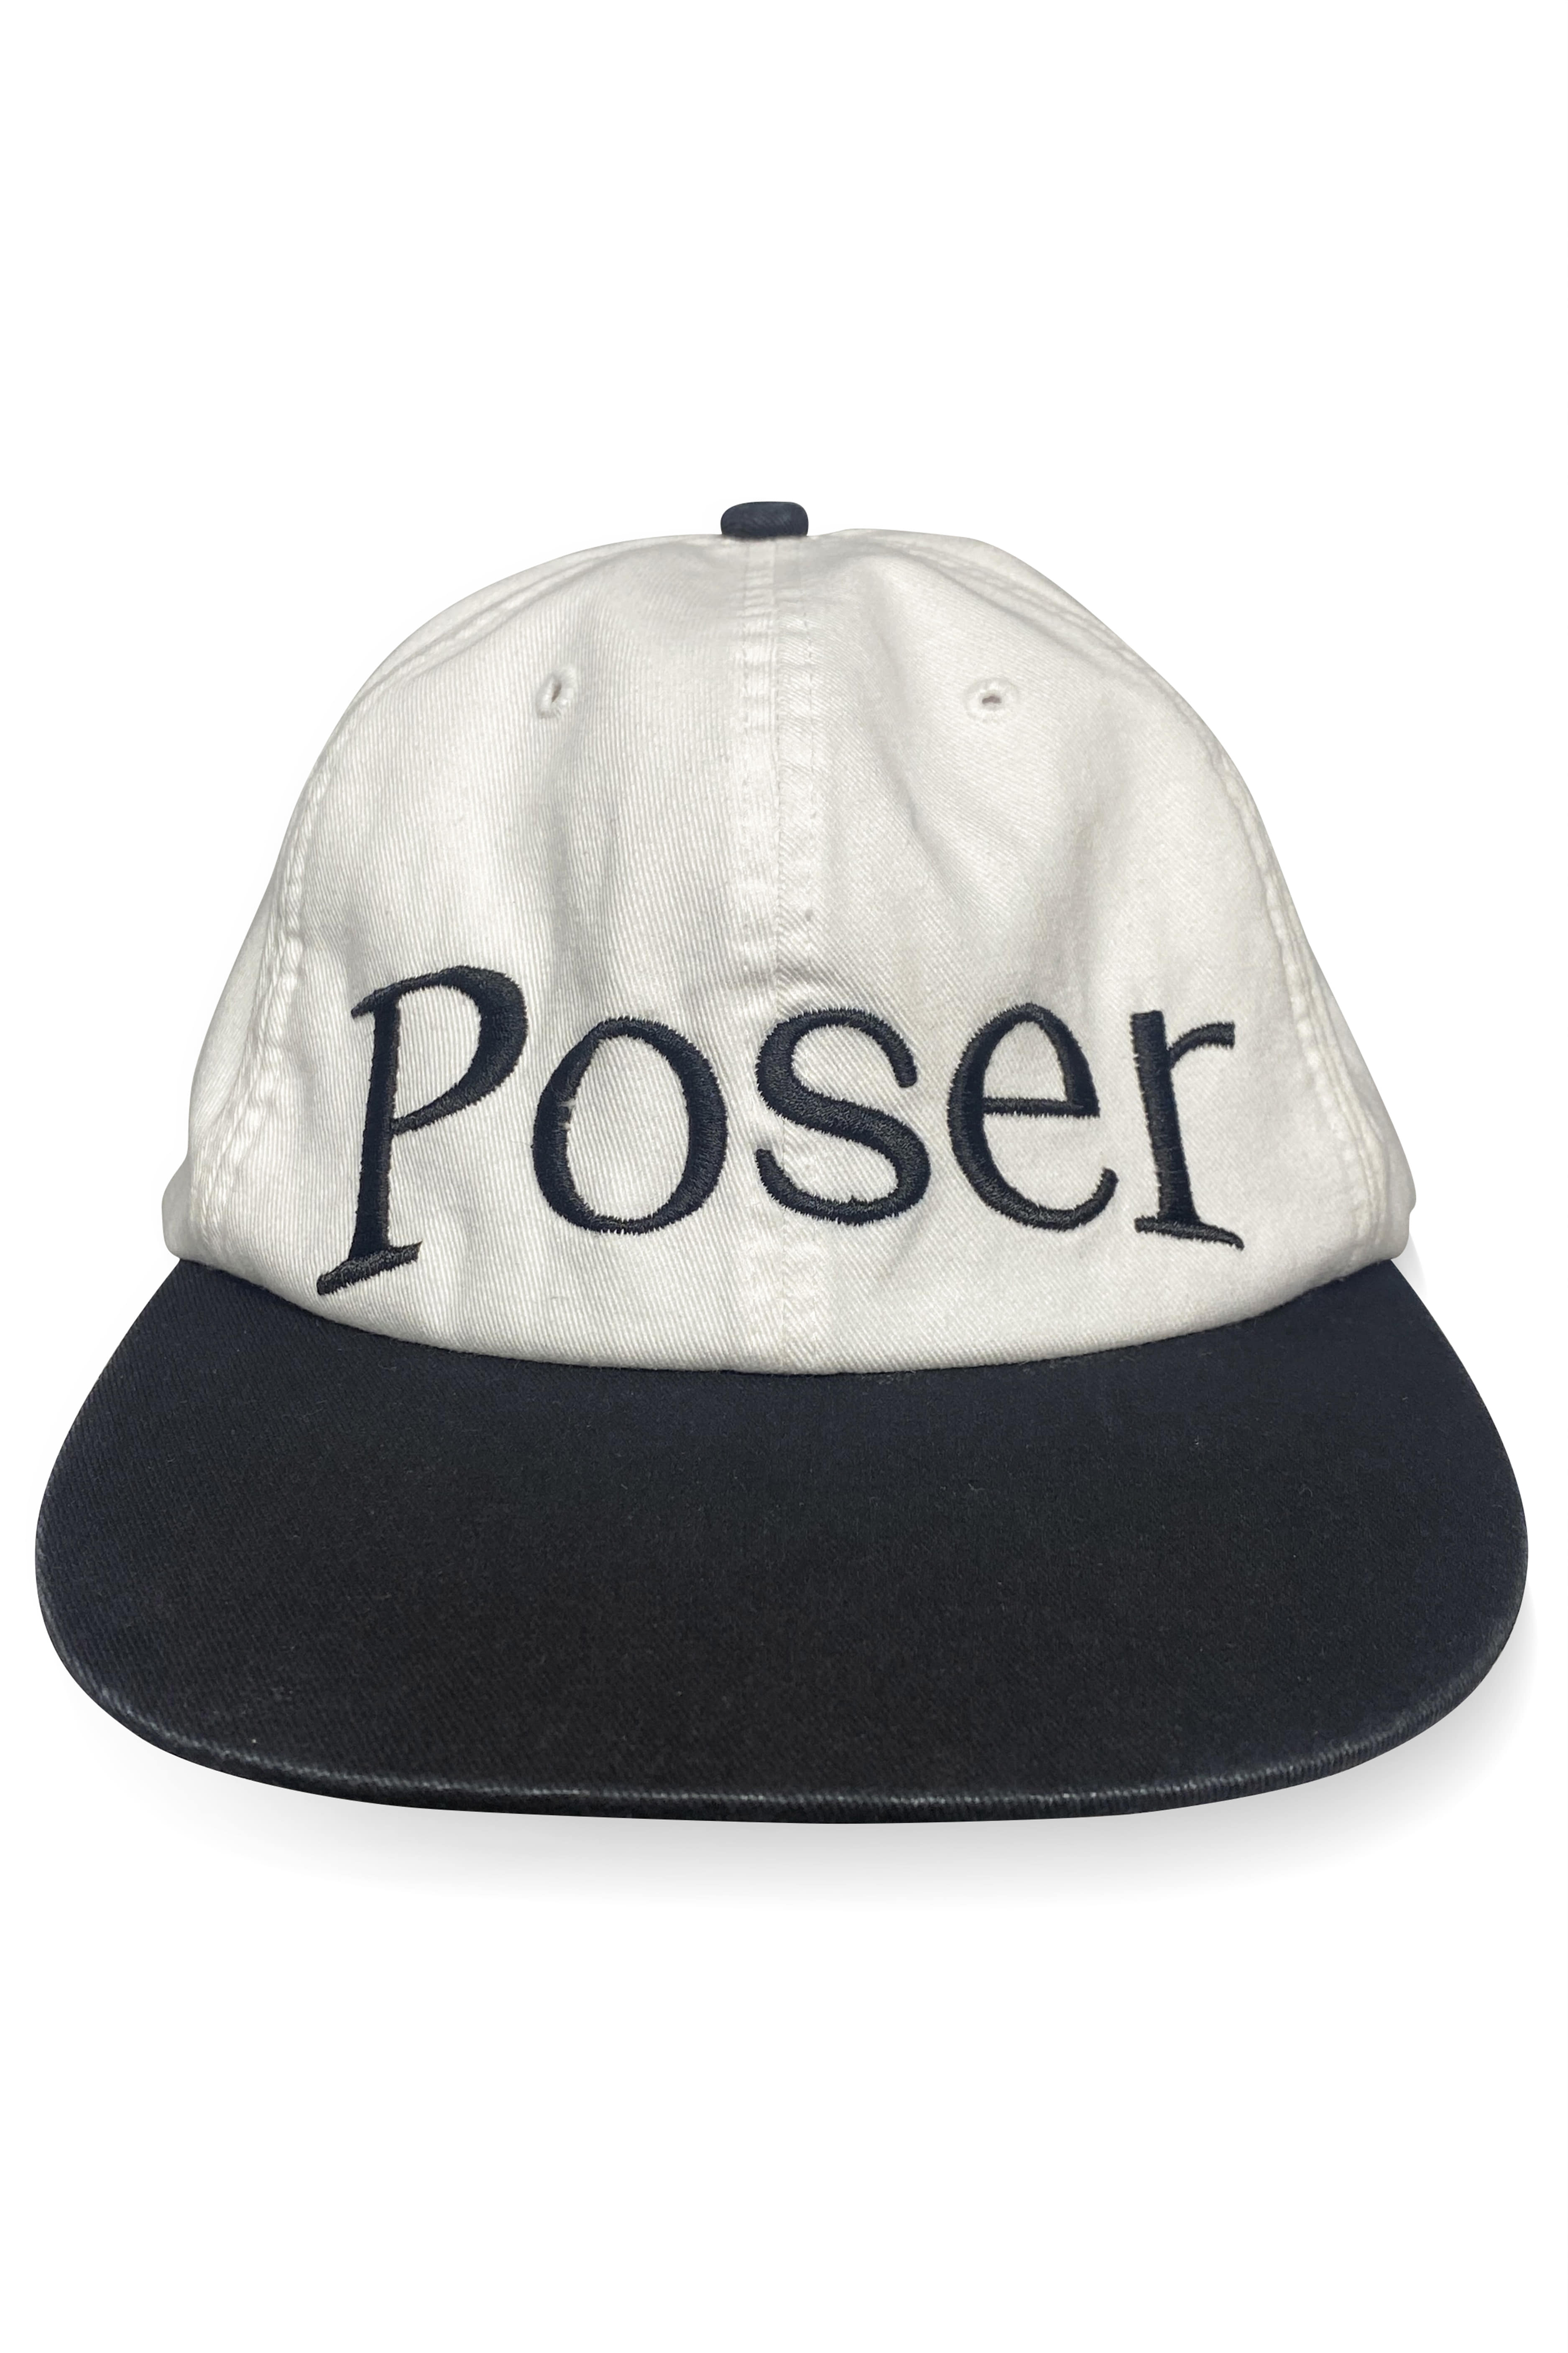 [5.10재입고]&#039;Poser&#039; vintage cap/White&amp;Black